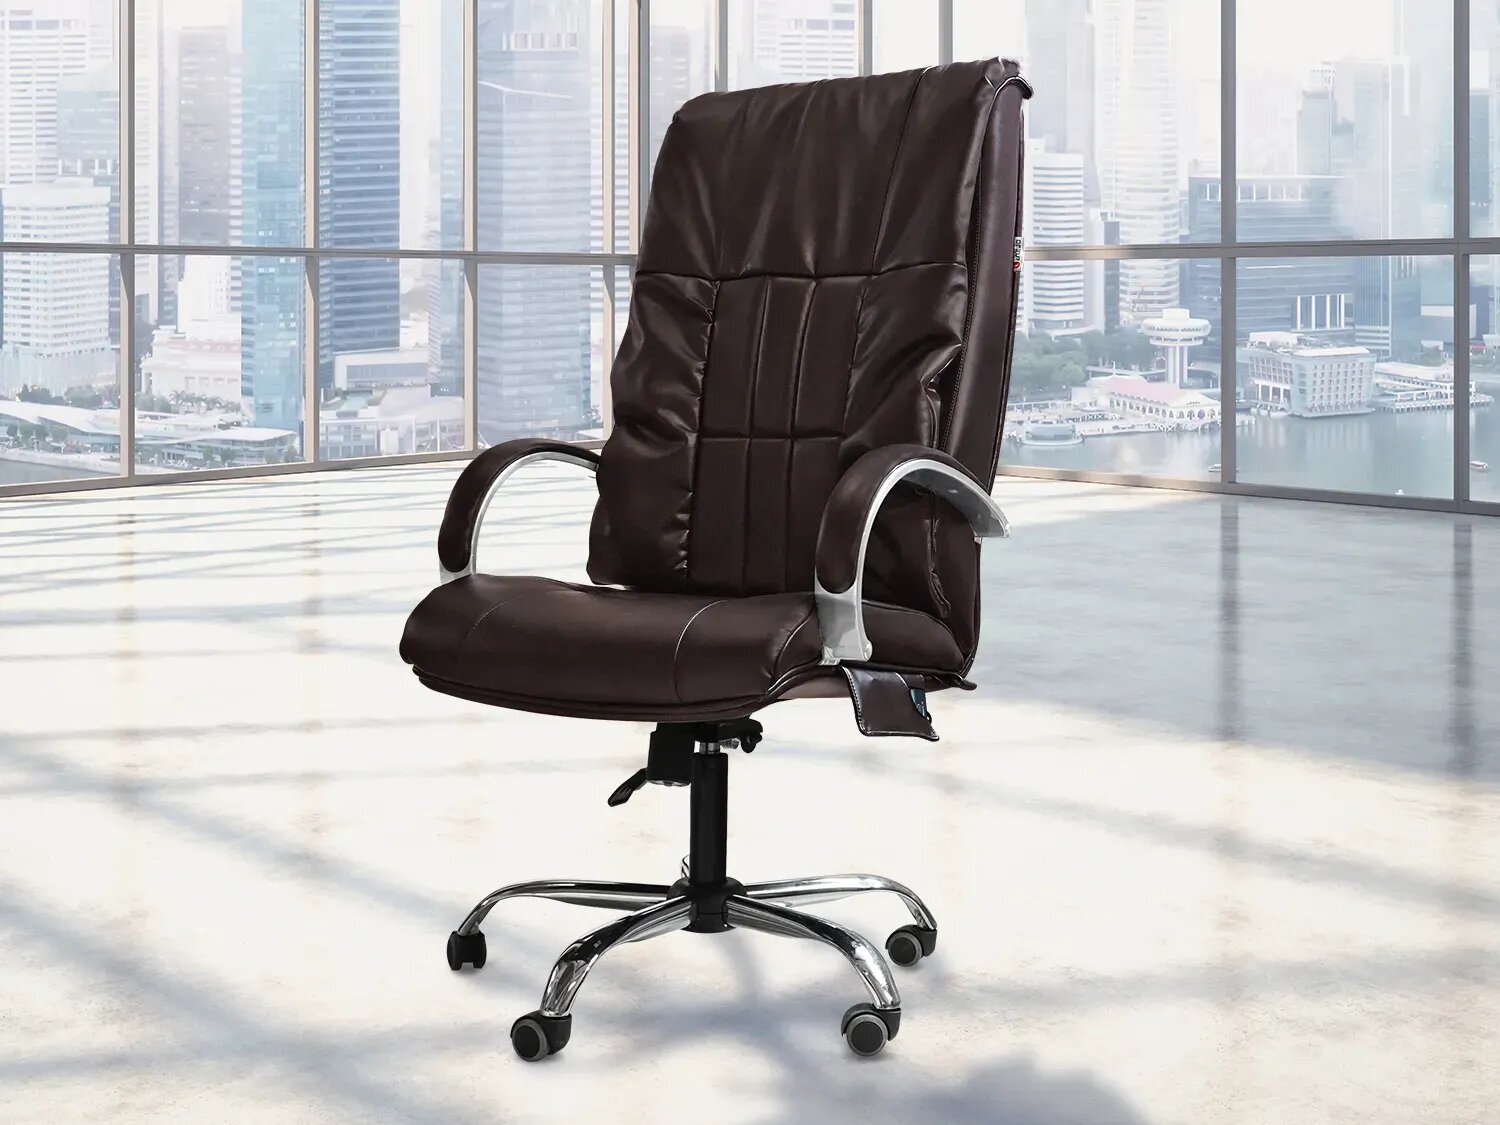 Офисное массажное кресло EGO BOSS EG1001 LKFO шоколад (Арпатек)